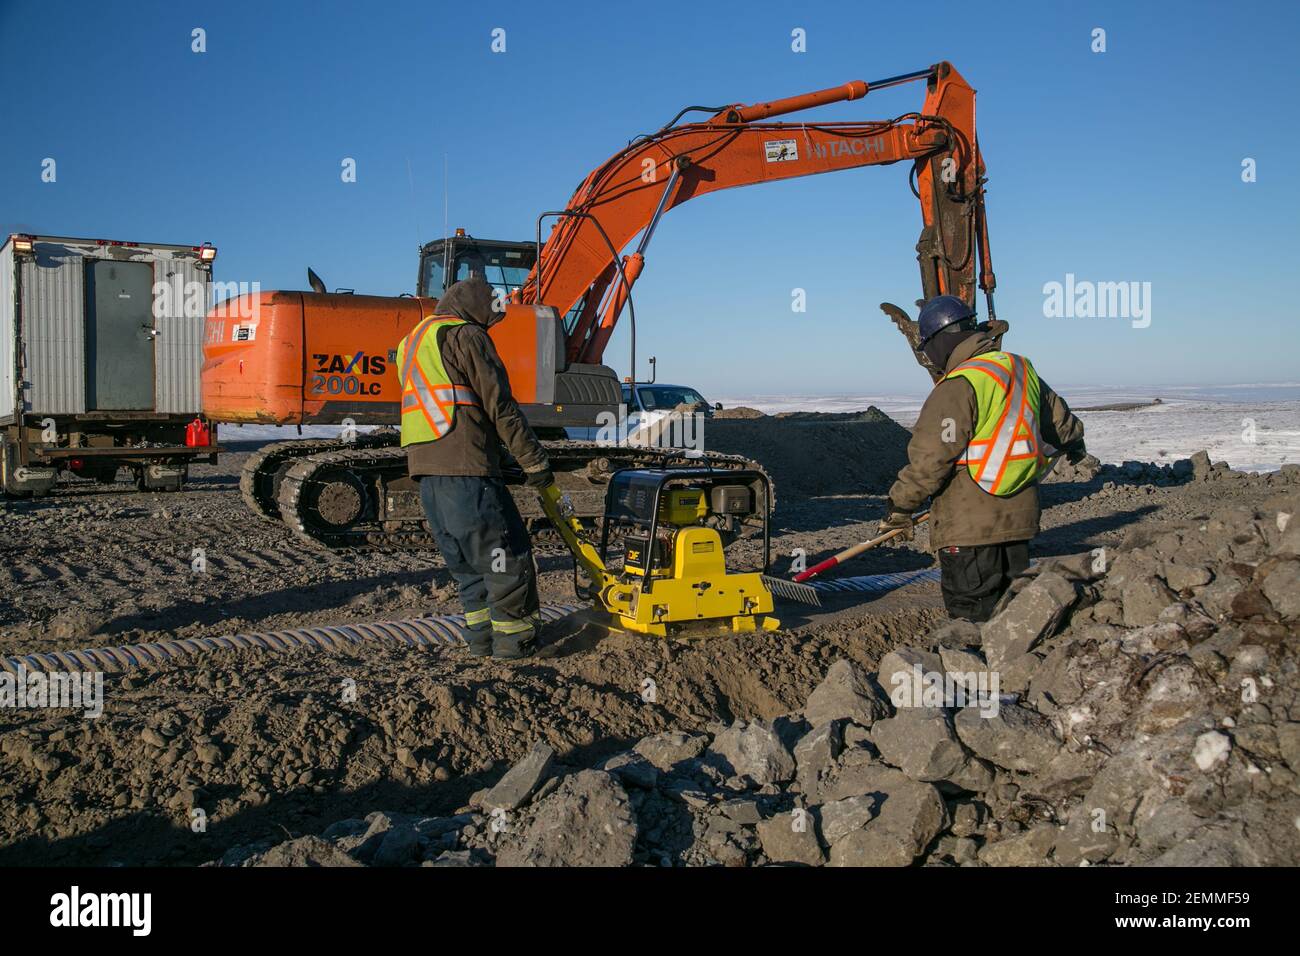 Des travailleurs et des excavateurs de sexe masculin installent un ponceau pendant la construction hivernale de la route Inuvik-Tuktoyaktuk, dans l'Arctique canadien. Banque D'Images